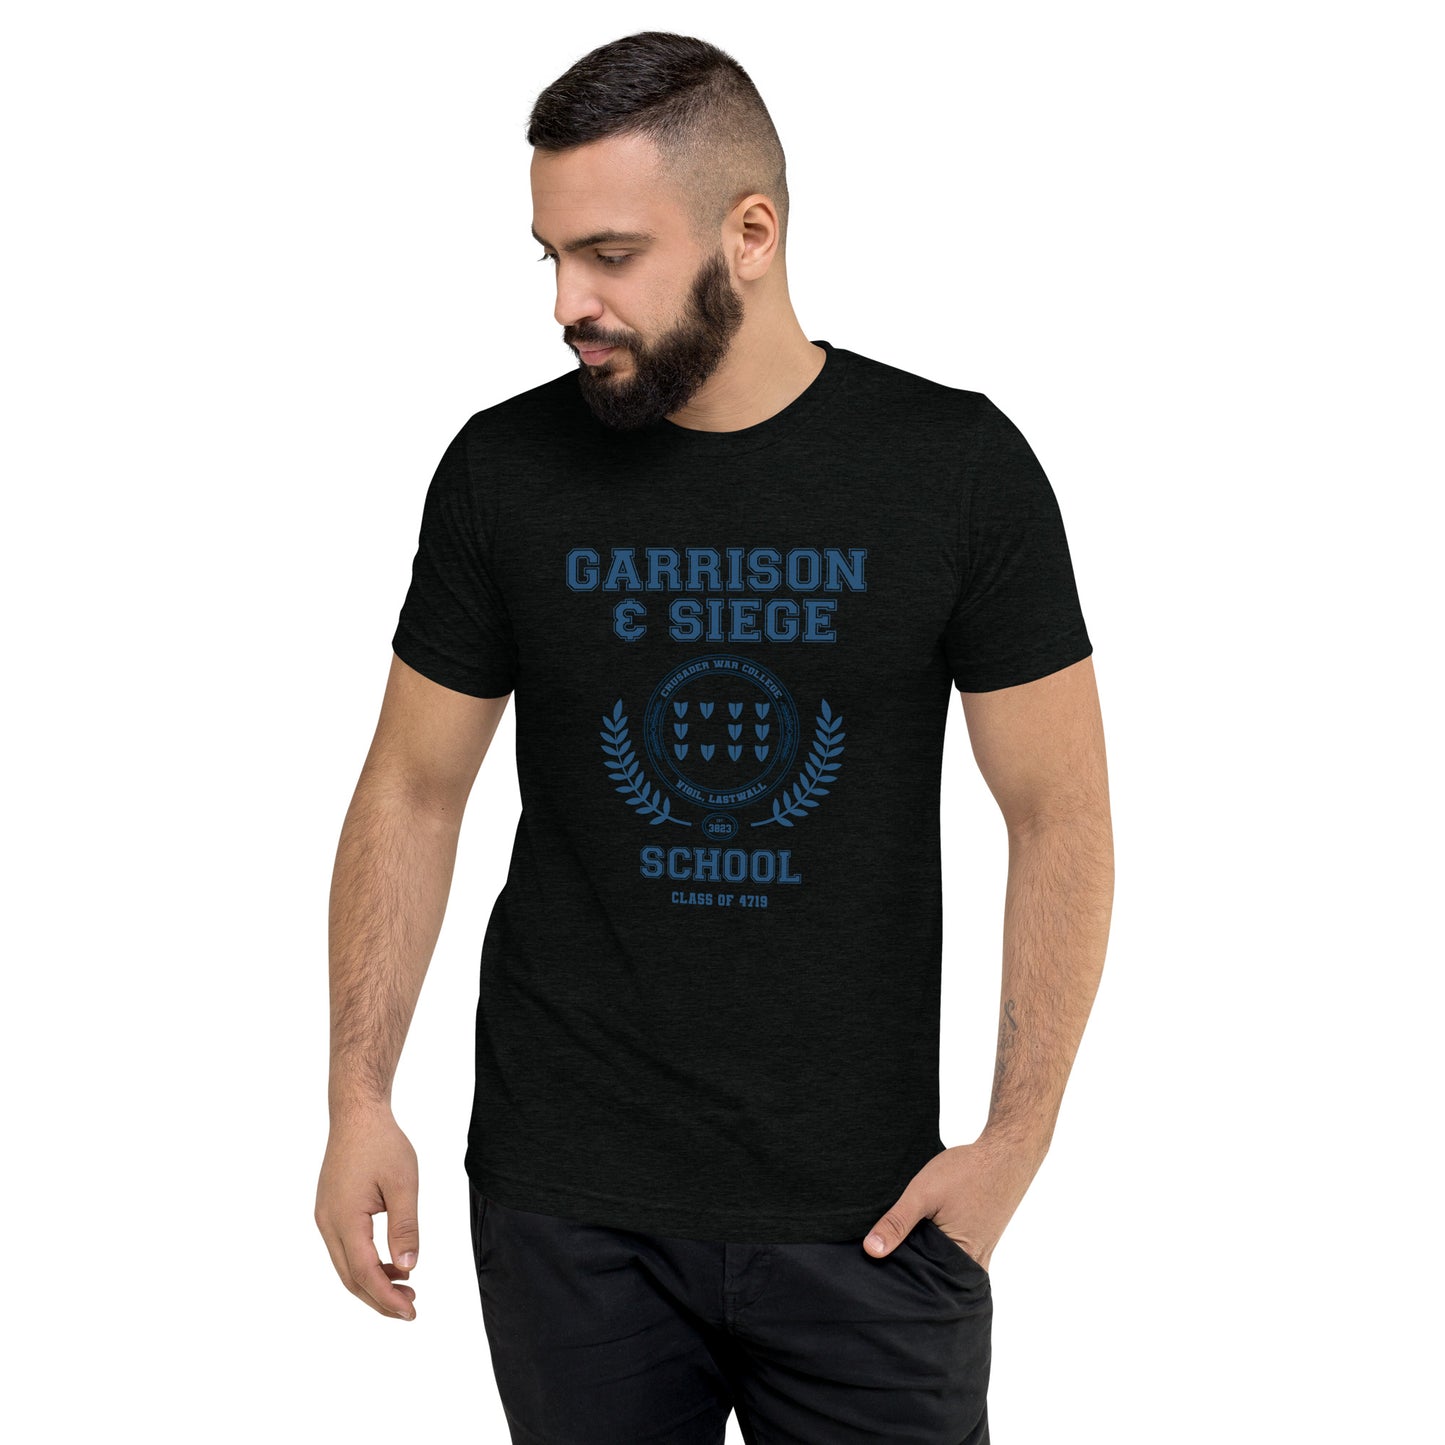 Crusader War College Shirt - Garrison & Siege